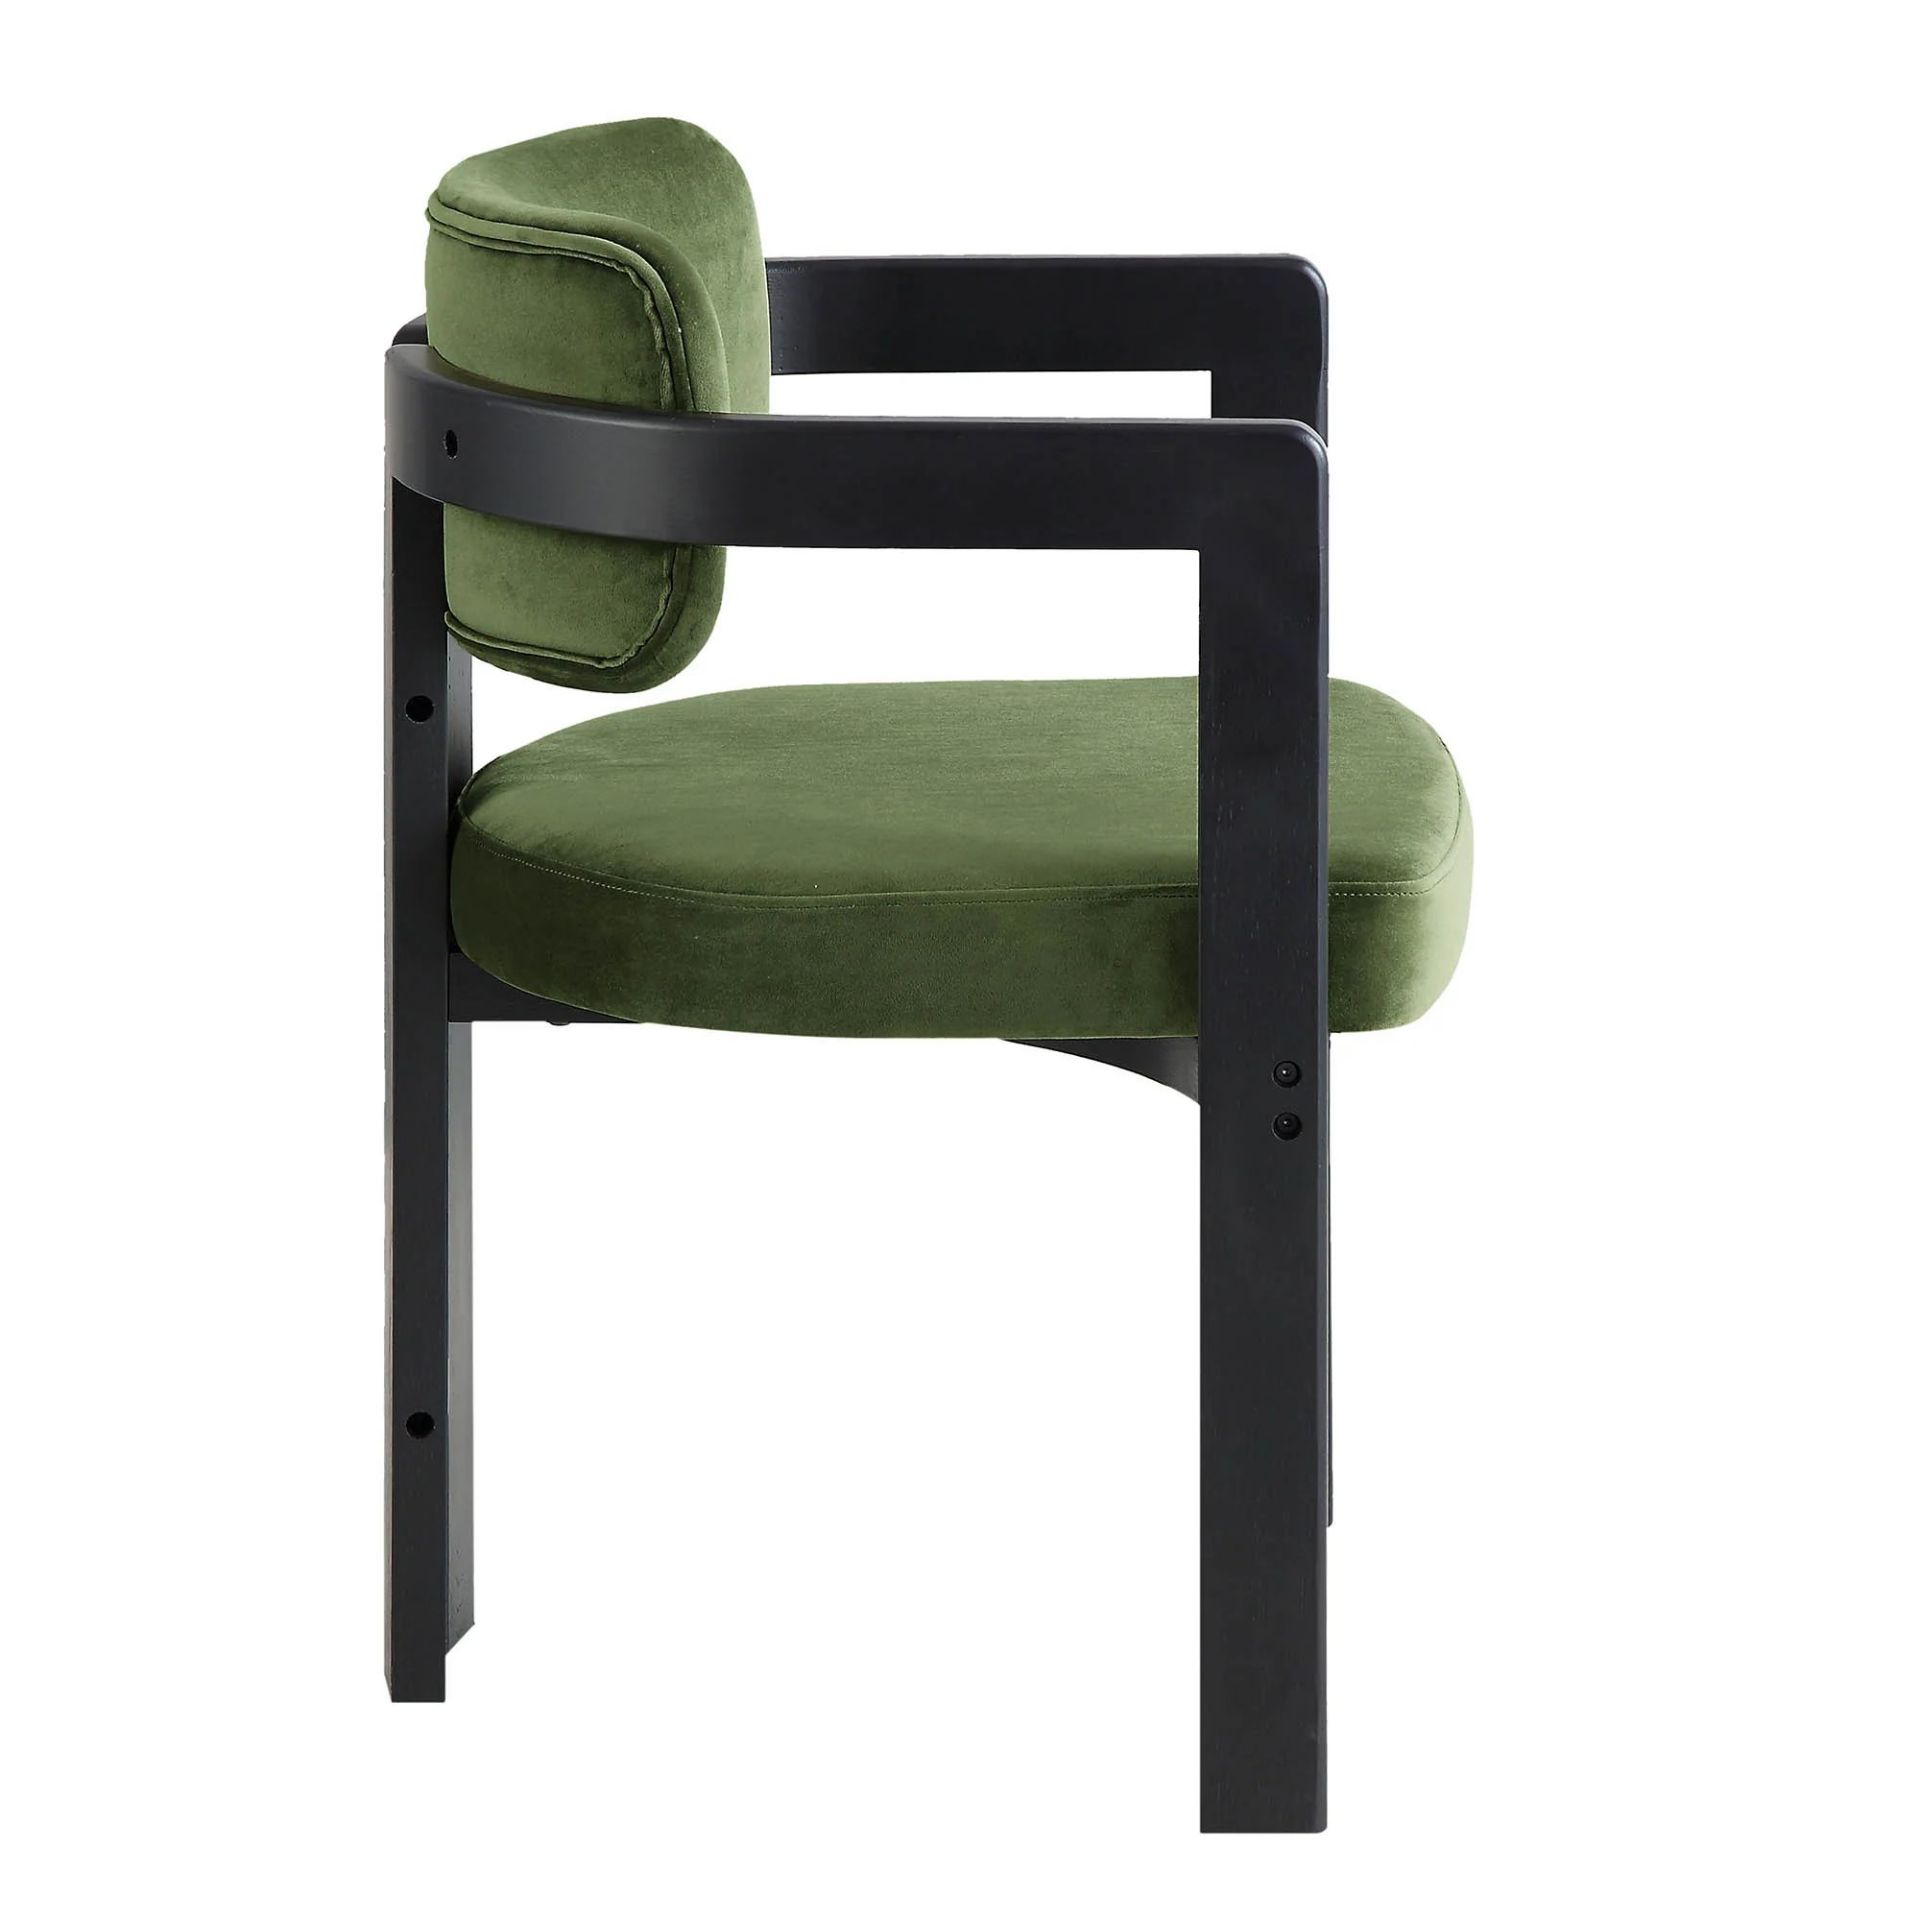 Stanford Curved Oak Frame Upholstered Chair, Moss Green Velvet Black Frame. - R14. RRP £239.99. - Image 2 of 2